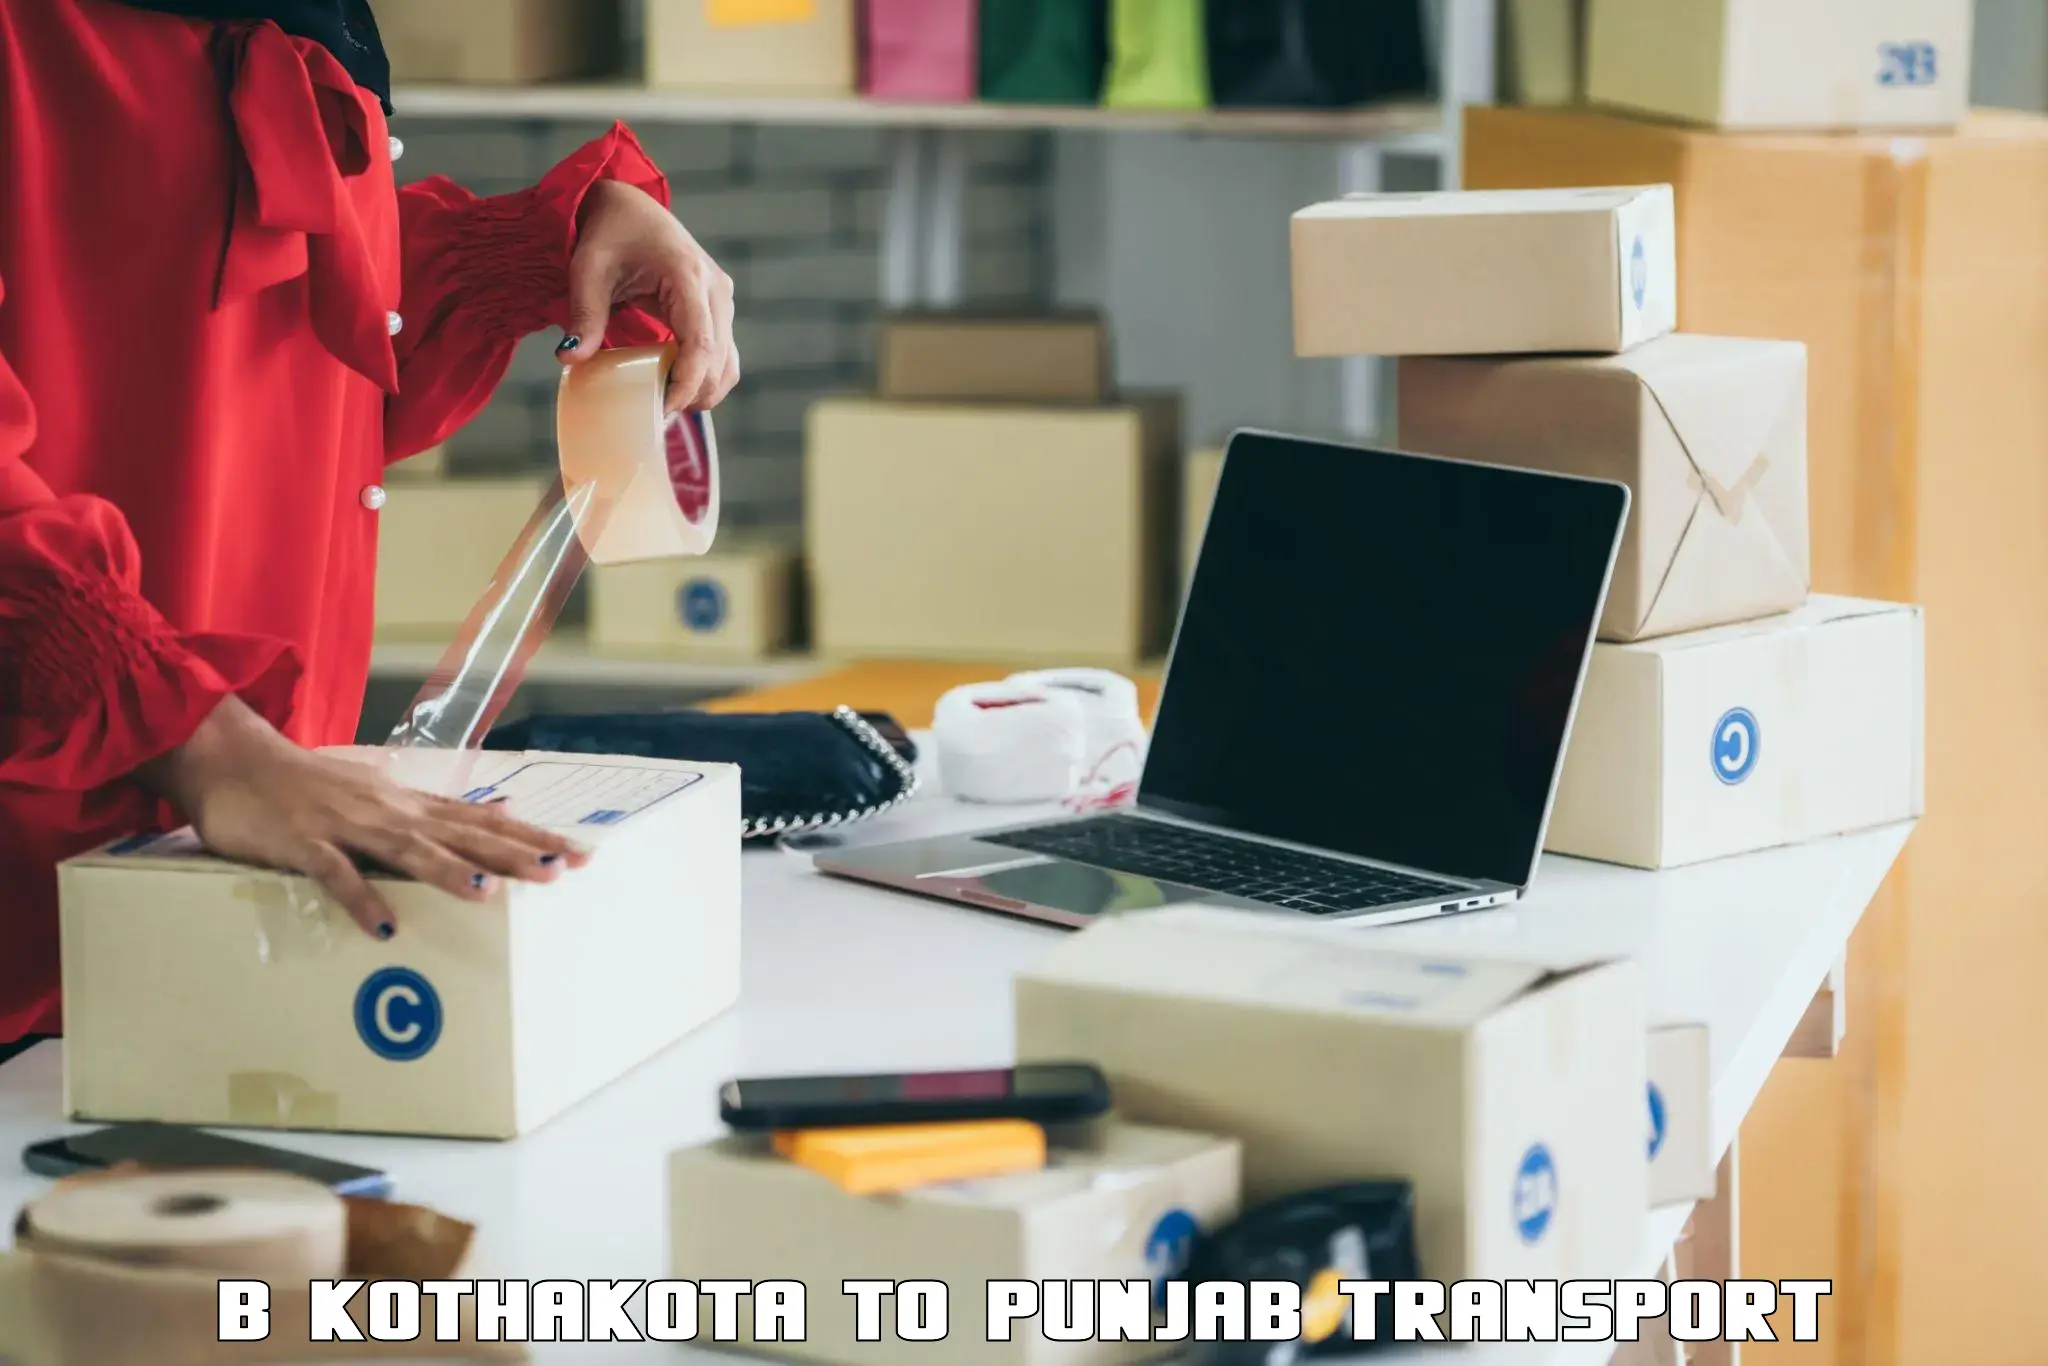 Furniture transport service B Kothakota to Jalandhar